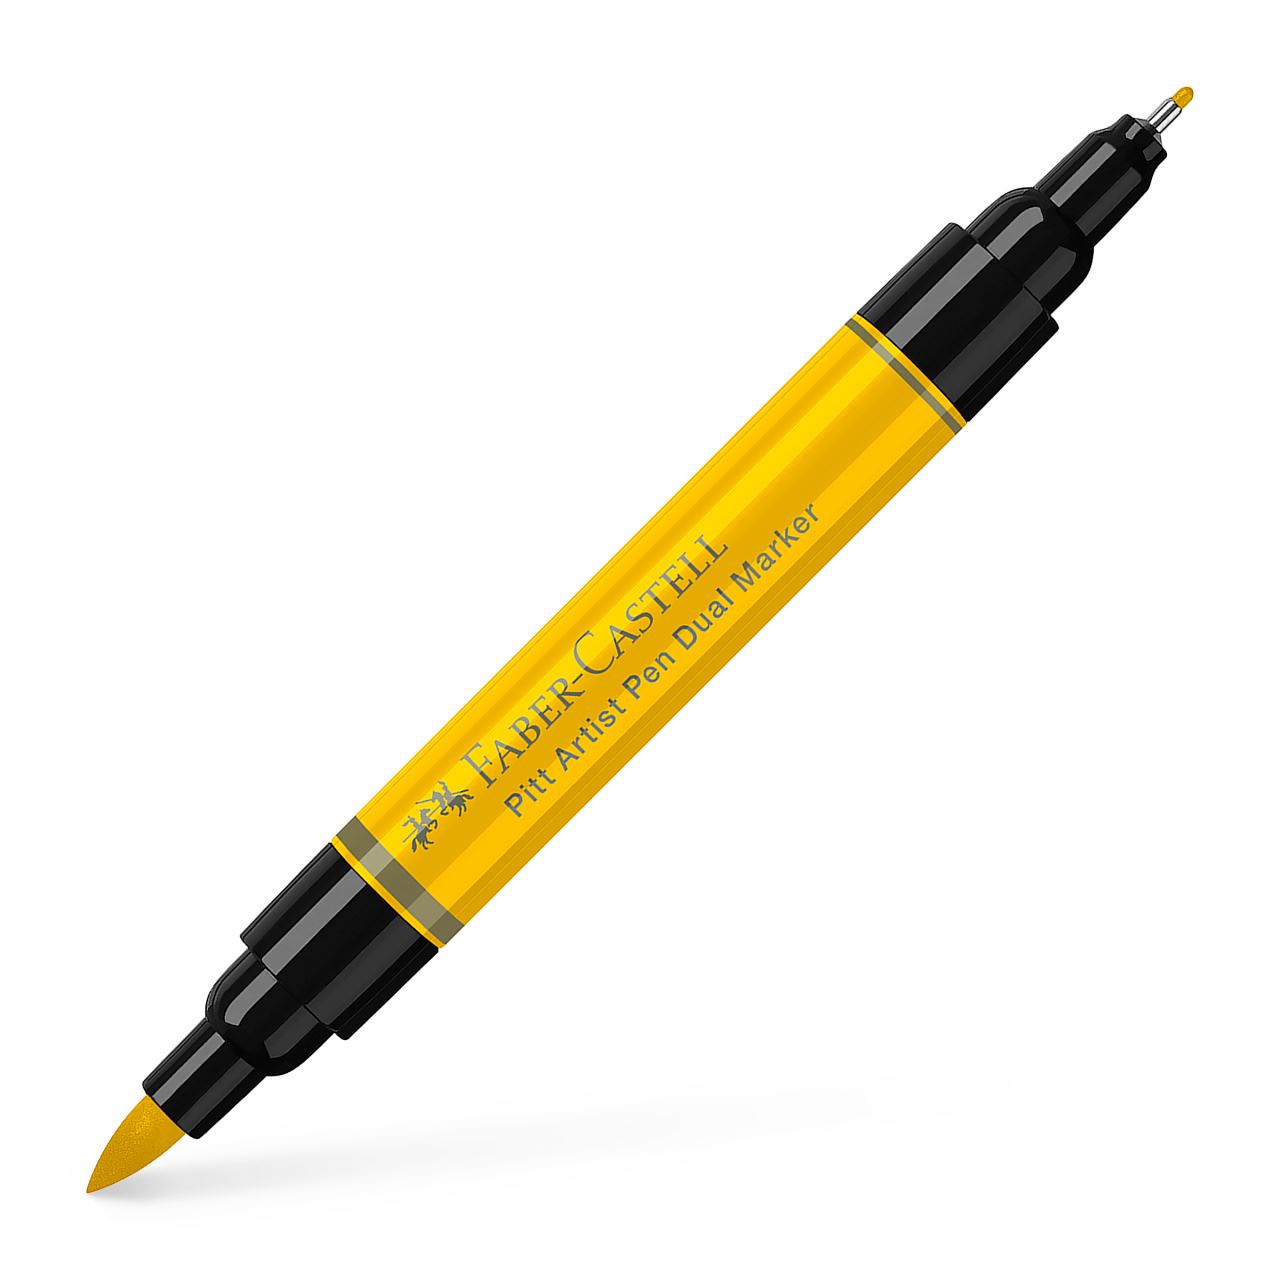 Faber-Castell - Pitt Artist Pen Dual Marker, amarillo de cadmio